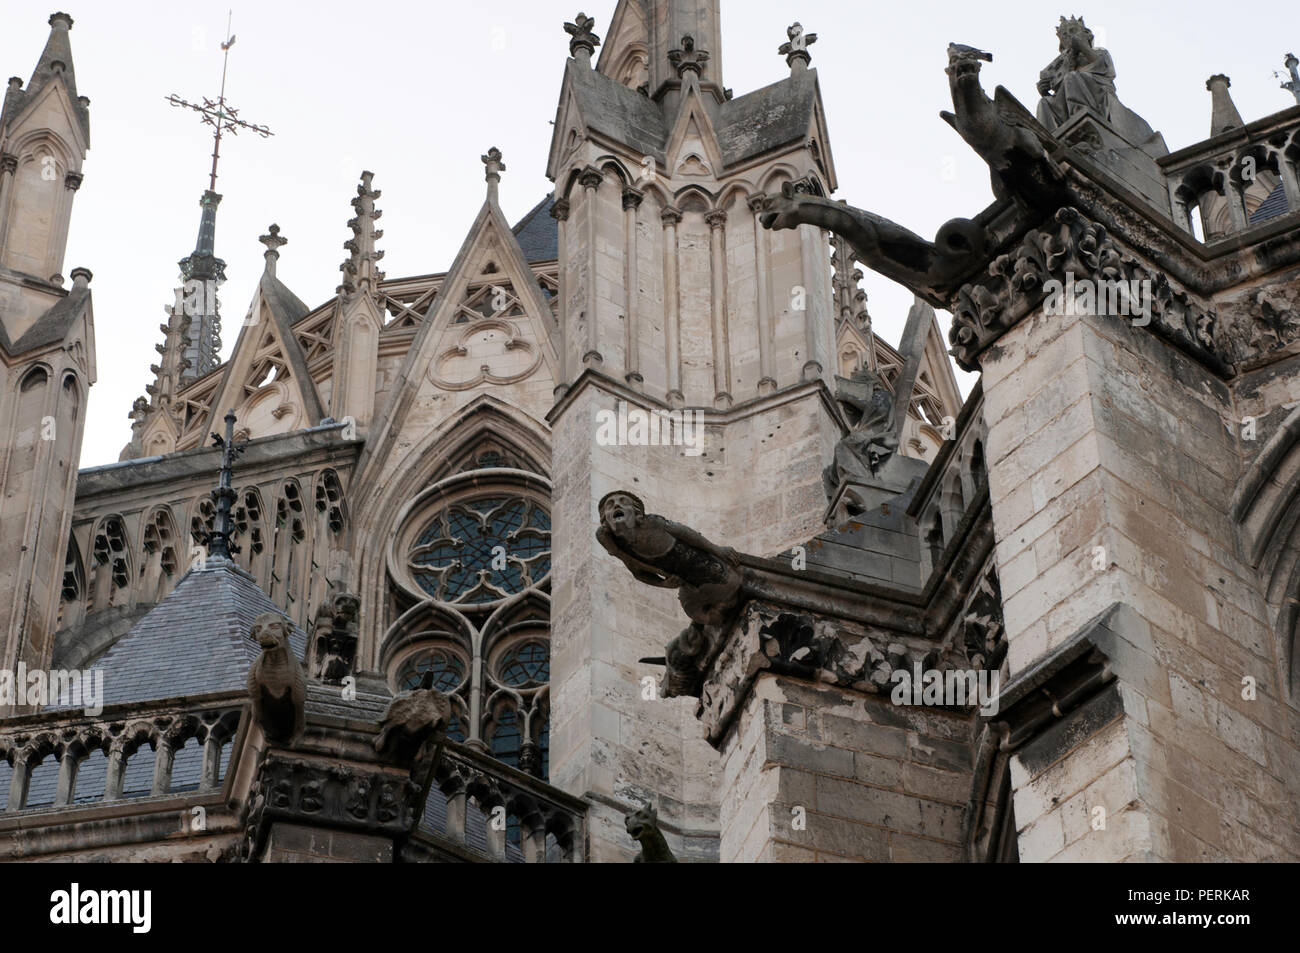 Spaventoso gargoyles si estendono dalla cattedrale di Amiens, Notre-Dame dAmiens, in Amiens, Francia. Amiens vale la pena di una visita durante un viaggio nel nord della Francia. Foto Stock